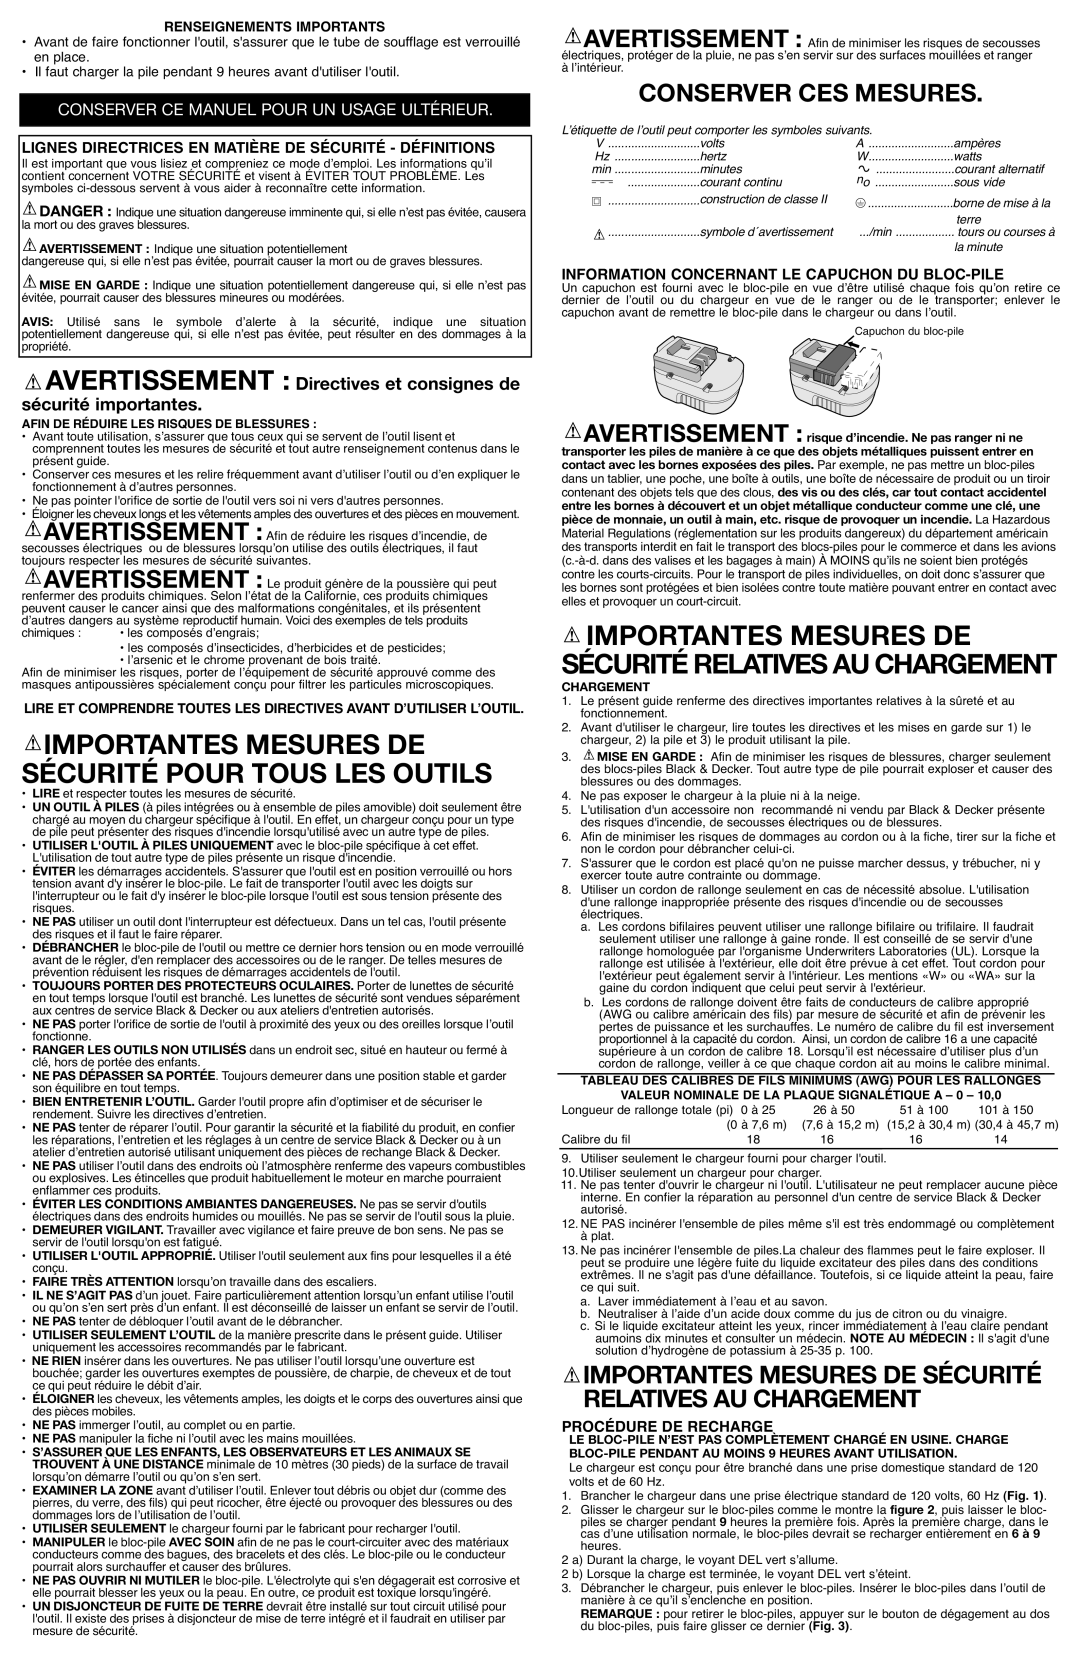 Black & Decker NS118 Importantes Mesures De, Sécurité Pour Tous Les Outils, Conserver Ces Mesures, Procédure De Recharge 